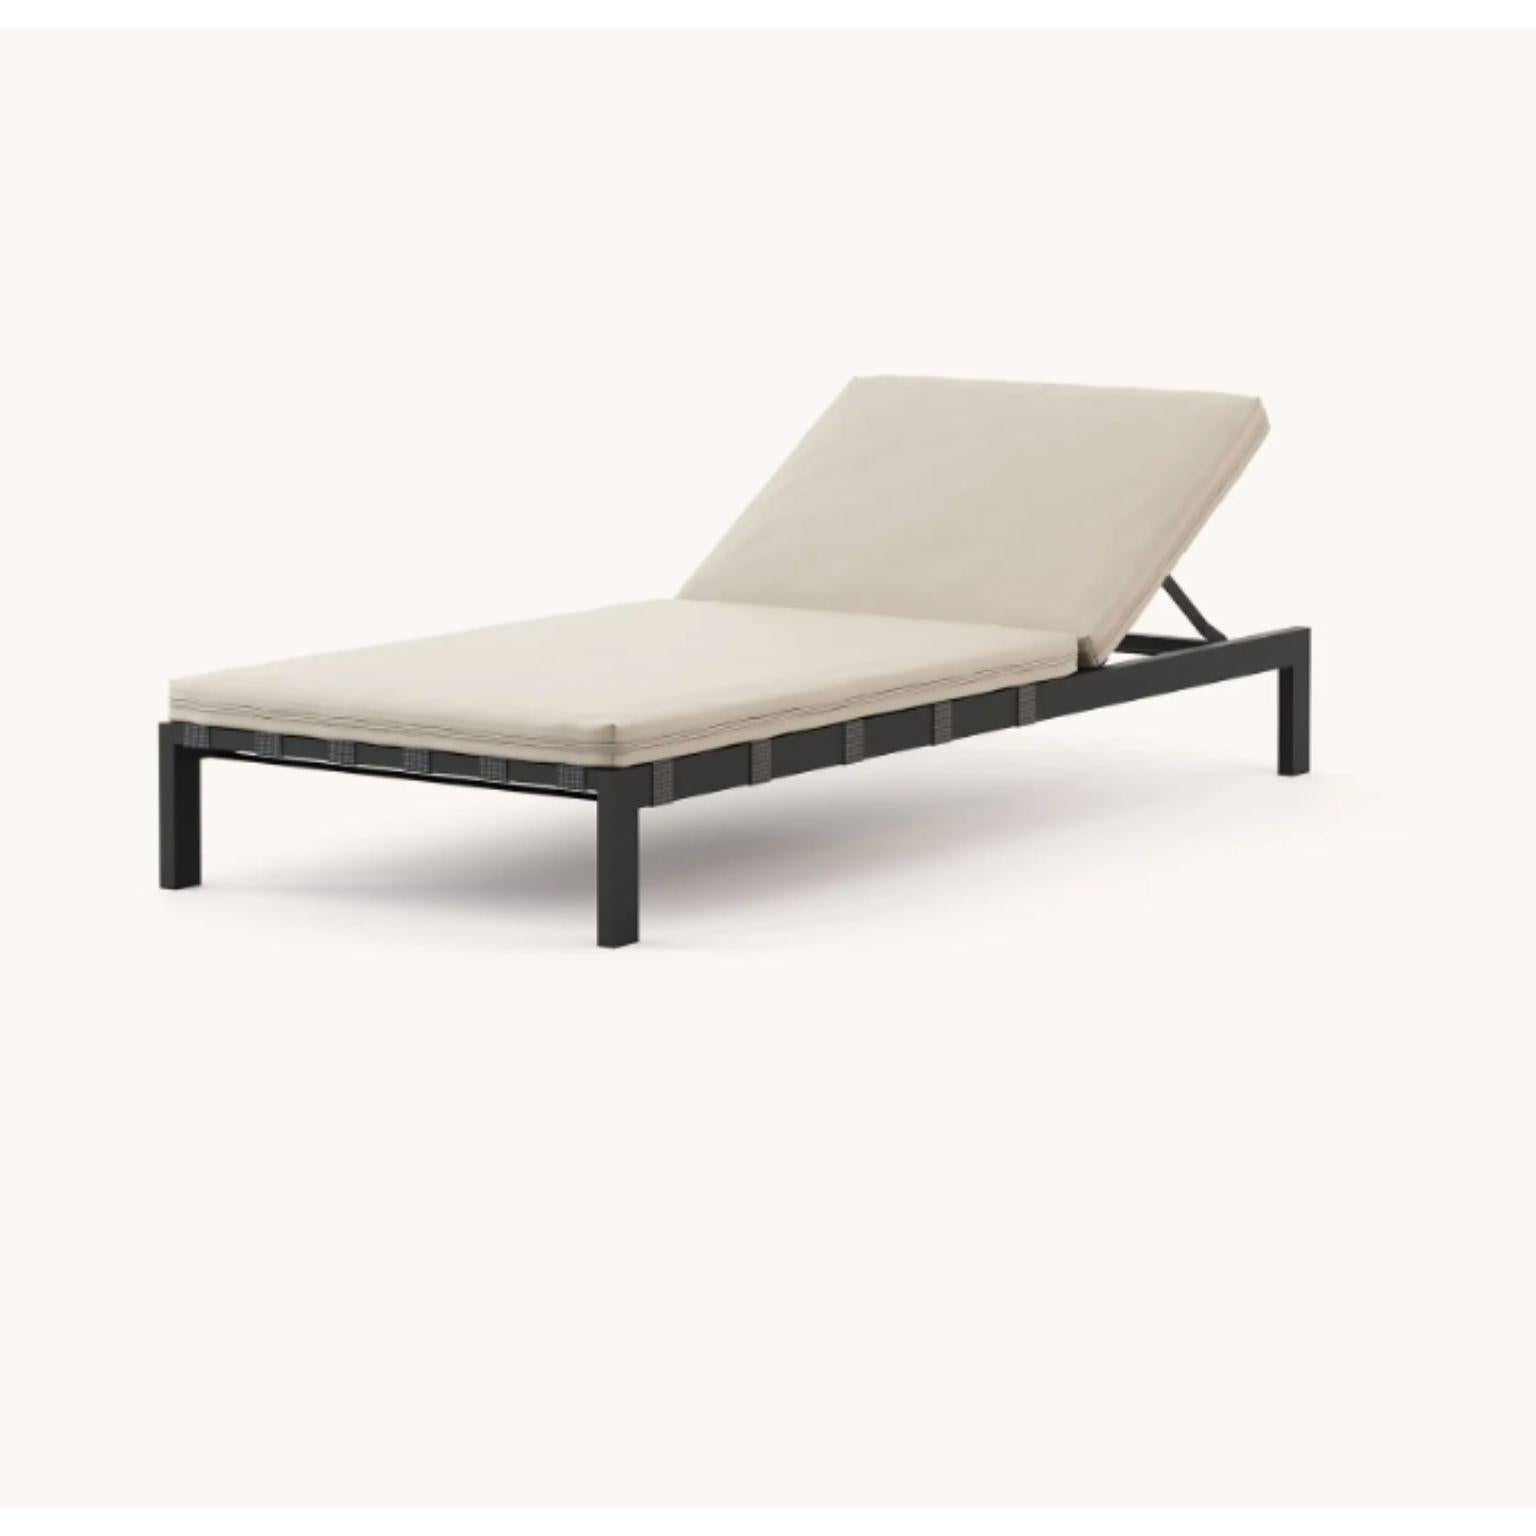 Chaise longue Bondi de Domkapa
MATERIAL : acier texturé noir, tissu (Nile Ivory).
Dimensions : L 200 x P 81 x H 31,5 cm : L 200 x P 81 x H 31,5 cm.
Également disponible dans différents matériaux.

Profitez de votre espace extérieur avec Bondi